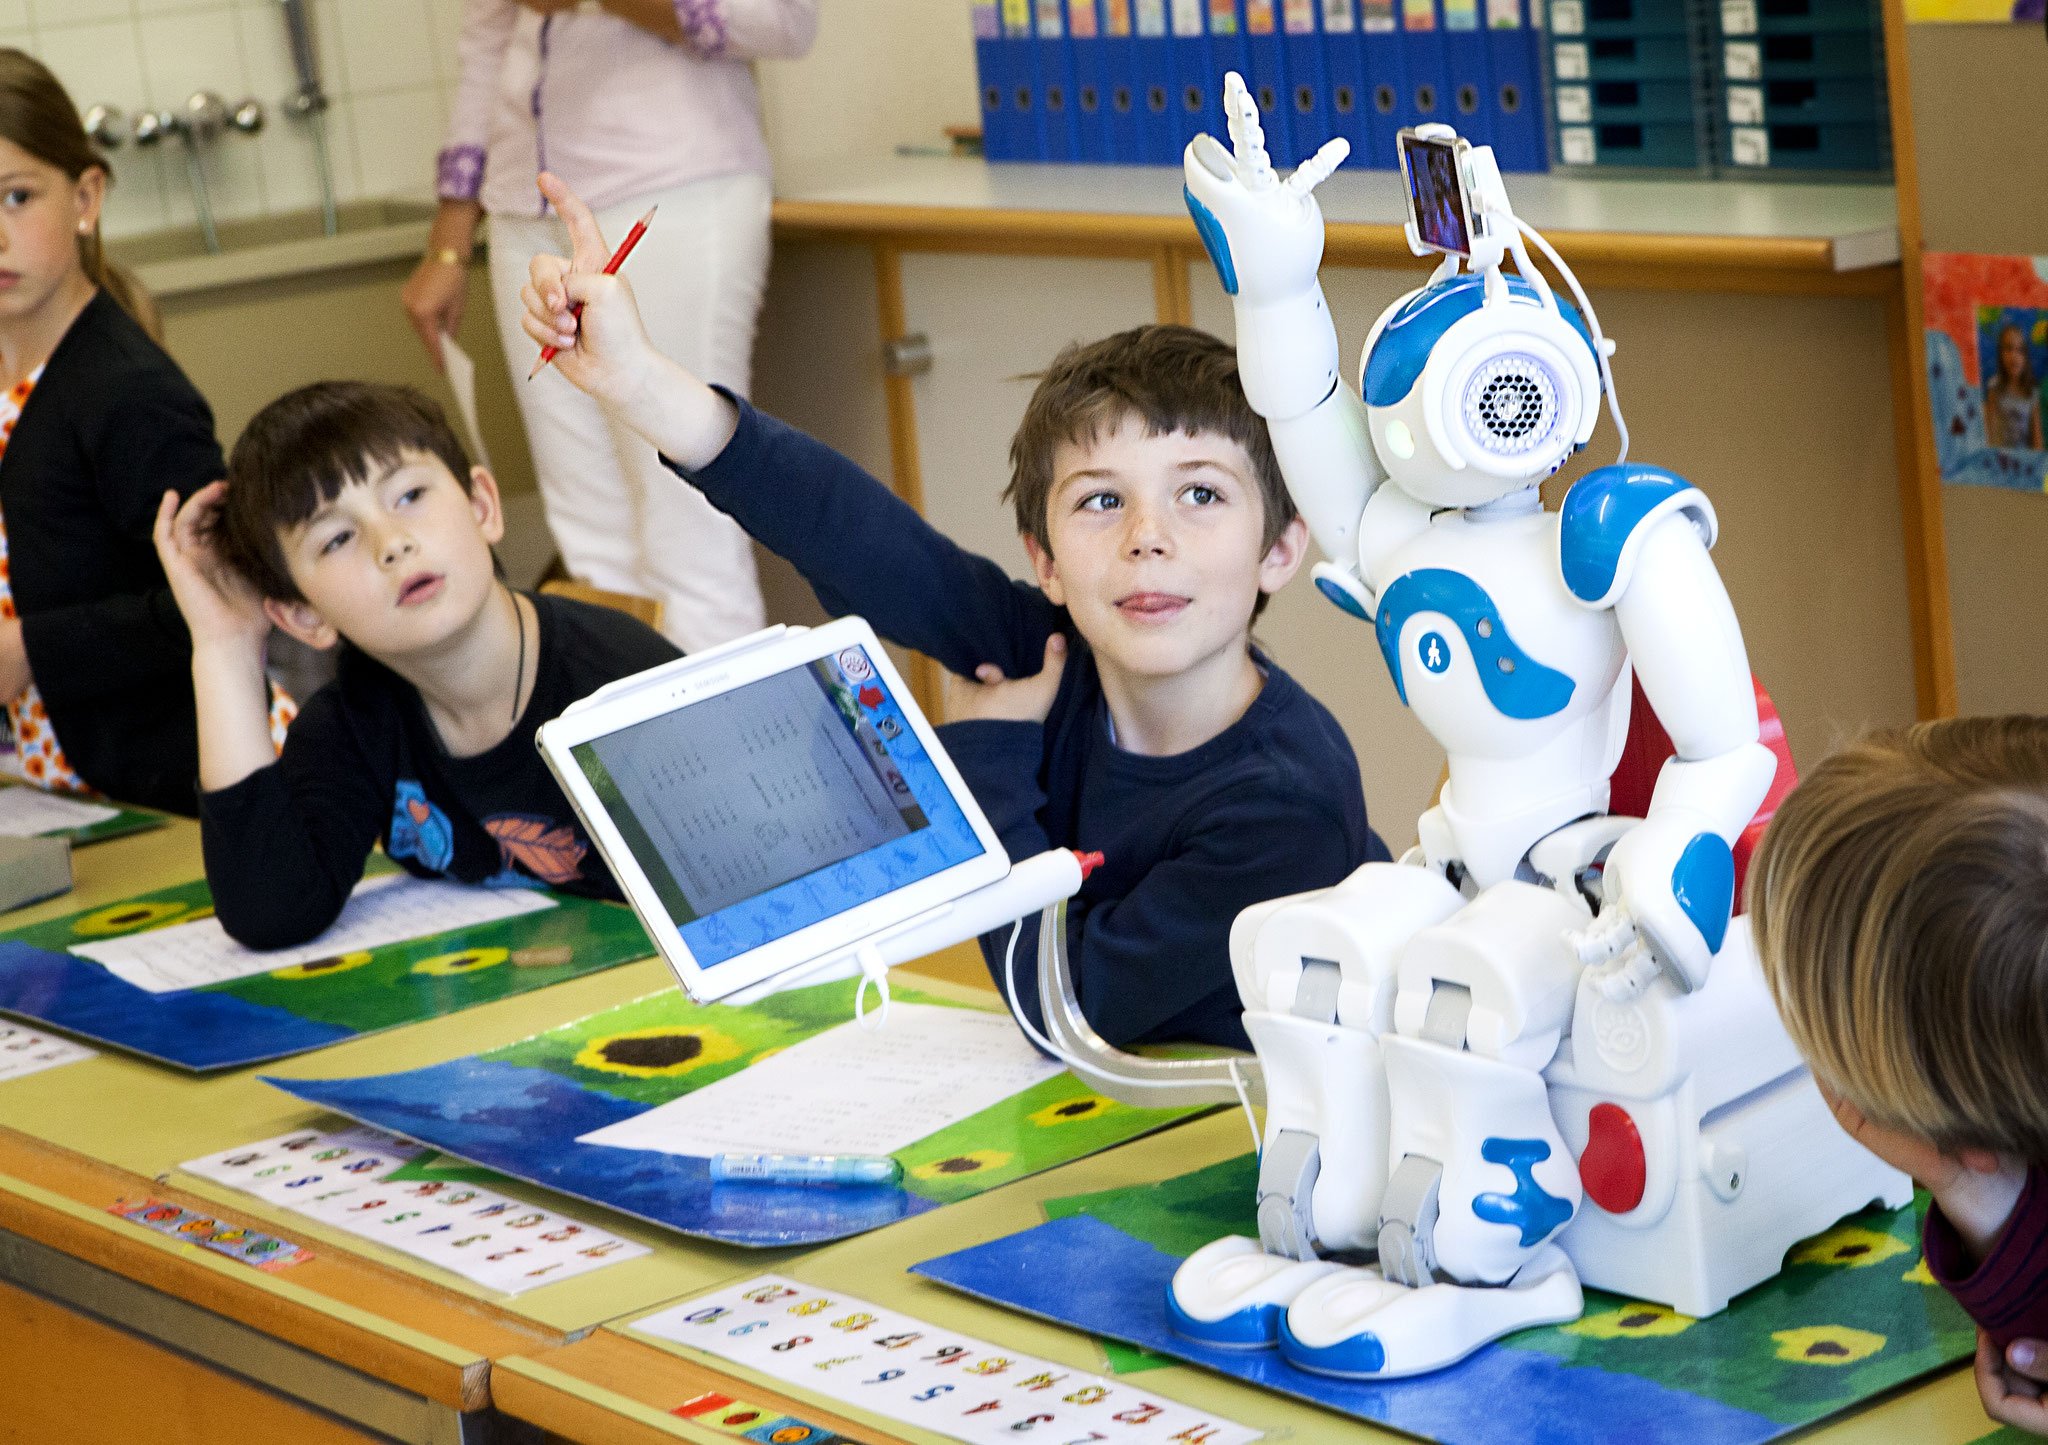 Технологии искусственного интеллекта и робототехники. Робототехника для детей. Роботы для детей. Робототехника в образовании. Робототехника в современном образовании.